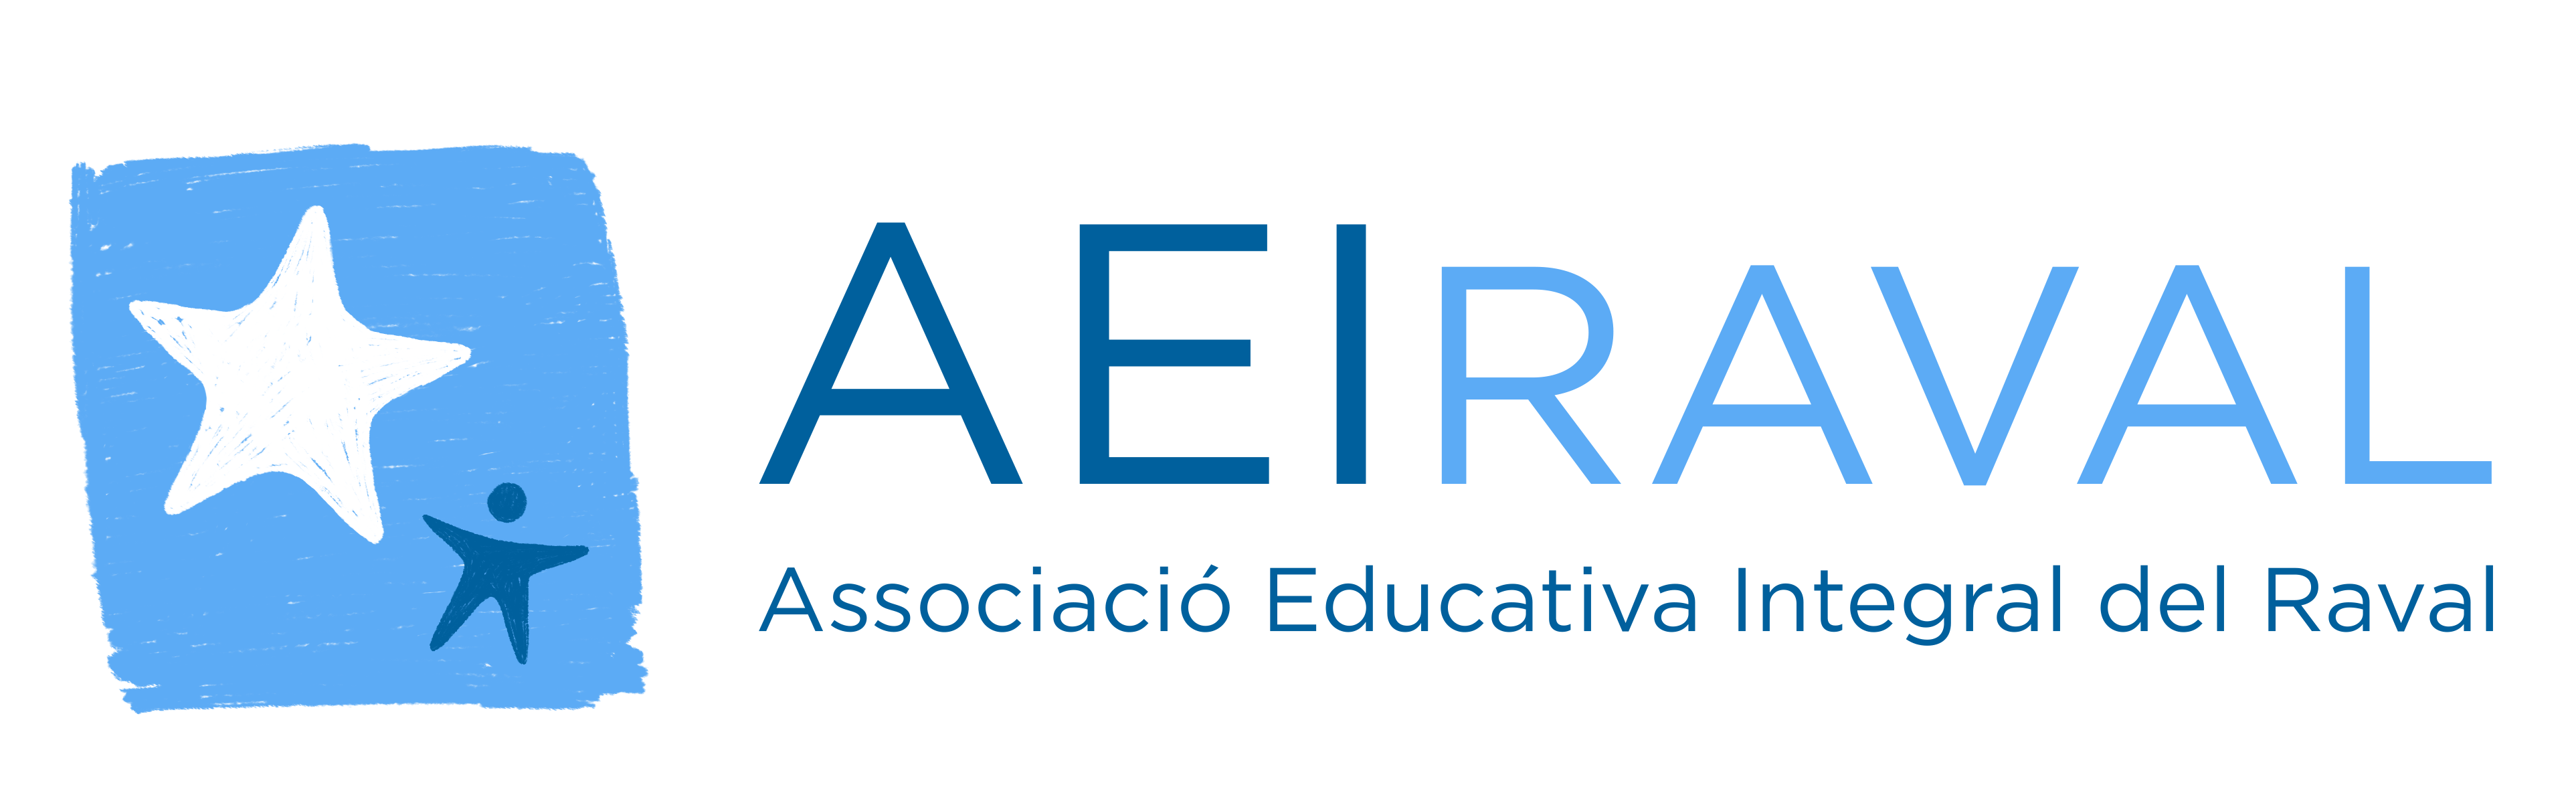 Associació Educativa Integral del Raval